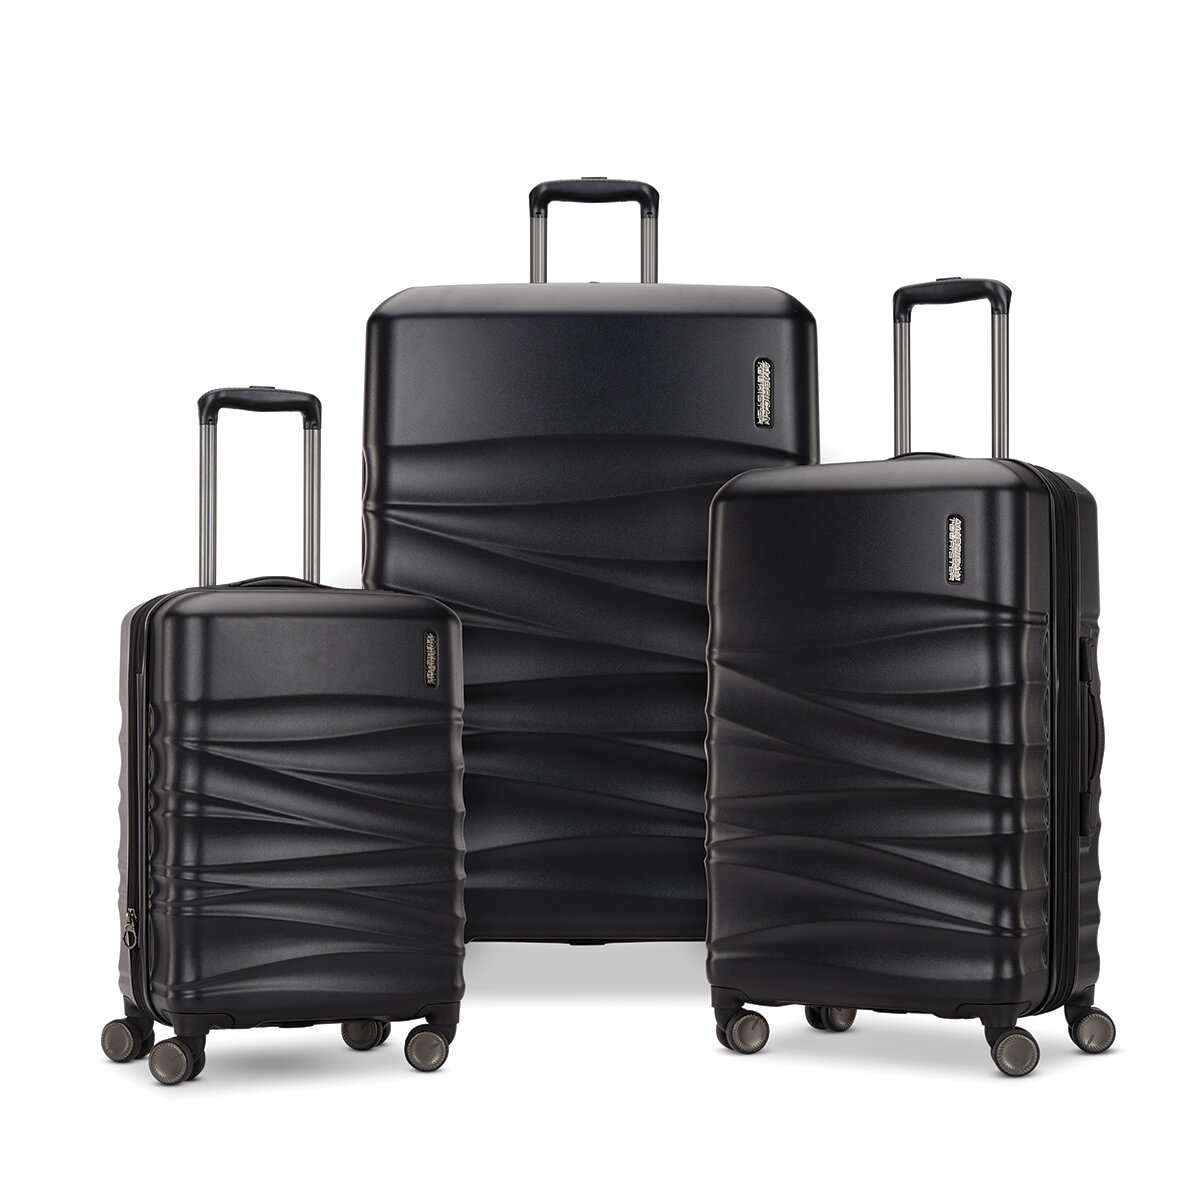 KIT DE ORGANIZADORES PARA VIAJES (no incluye maleta) Precio: $12.00 el kit  3 x $30.00 Incluye 8 organizadores de equipaje de viaje: •…